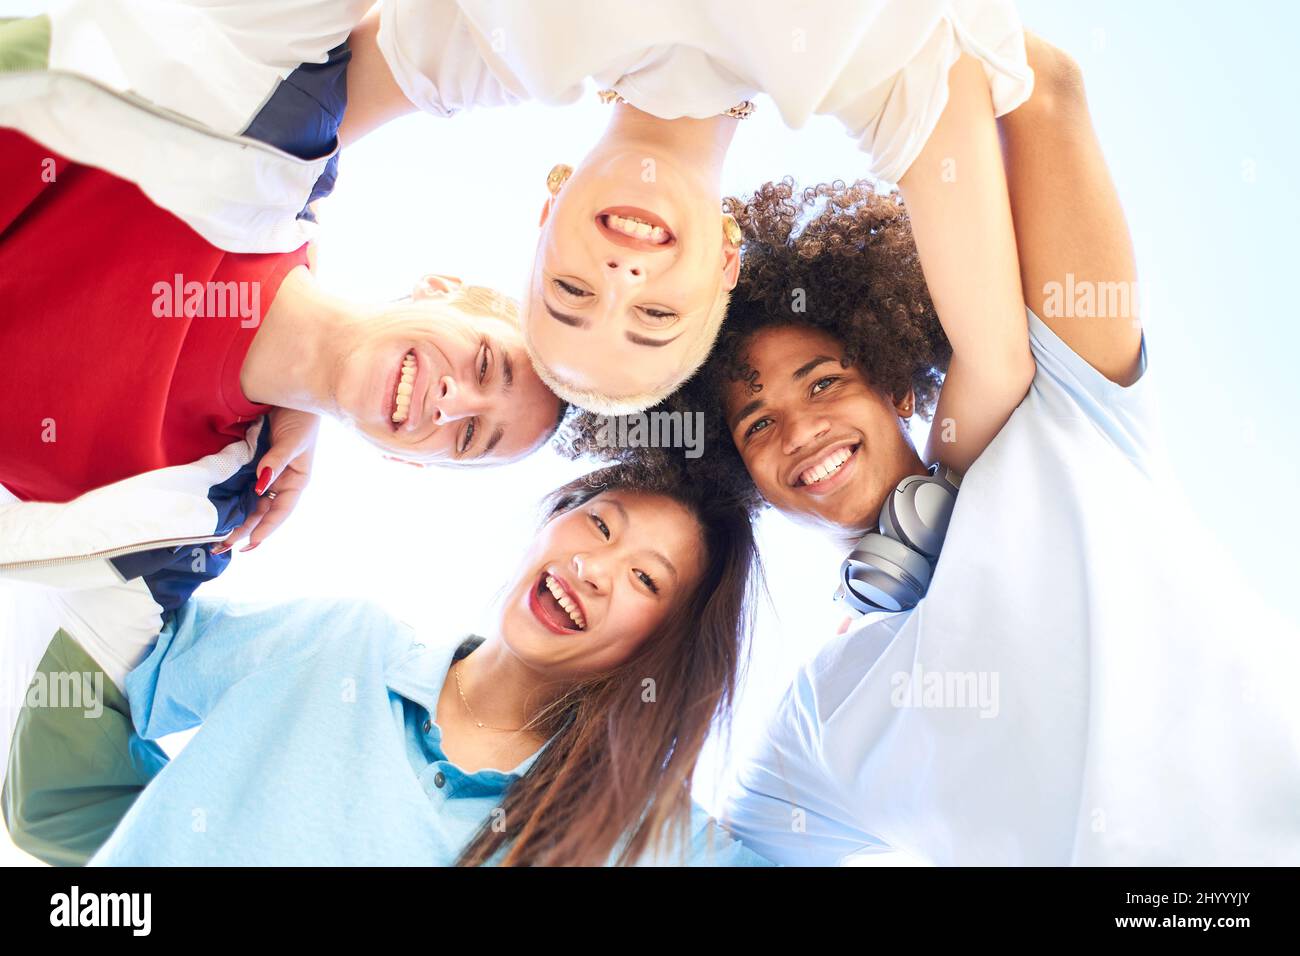 Glückliche multirassische Freunde, die Spaß zusammen haben. Gruppe lächelnder Menschen, die die Kamera betrachten. Jugendliche junge Studenten Gemeinschaft und Freundschaft Lebensstil Stockfoto